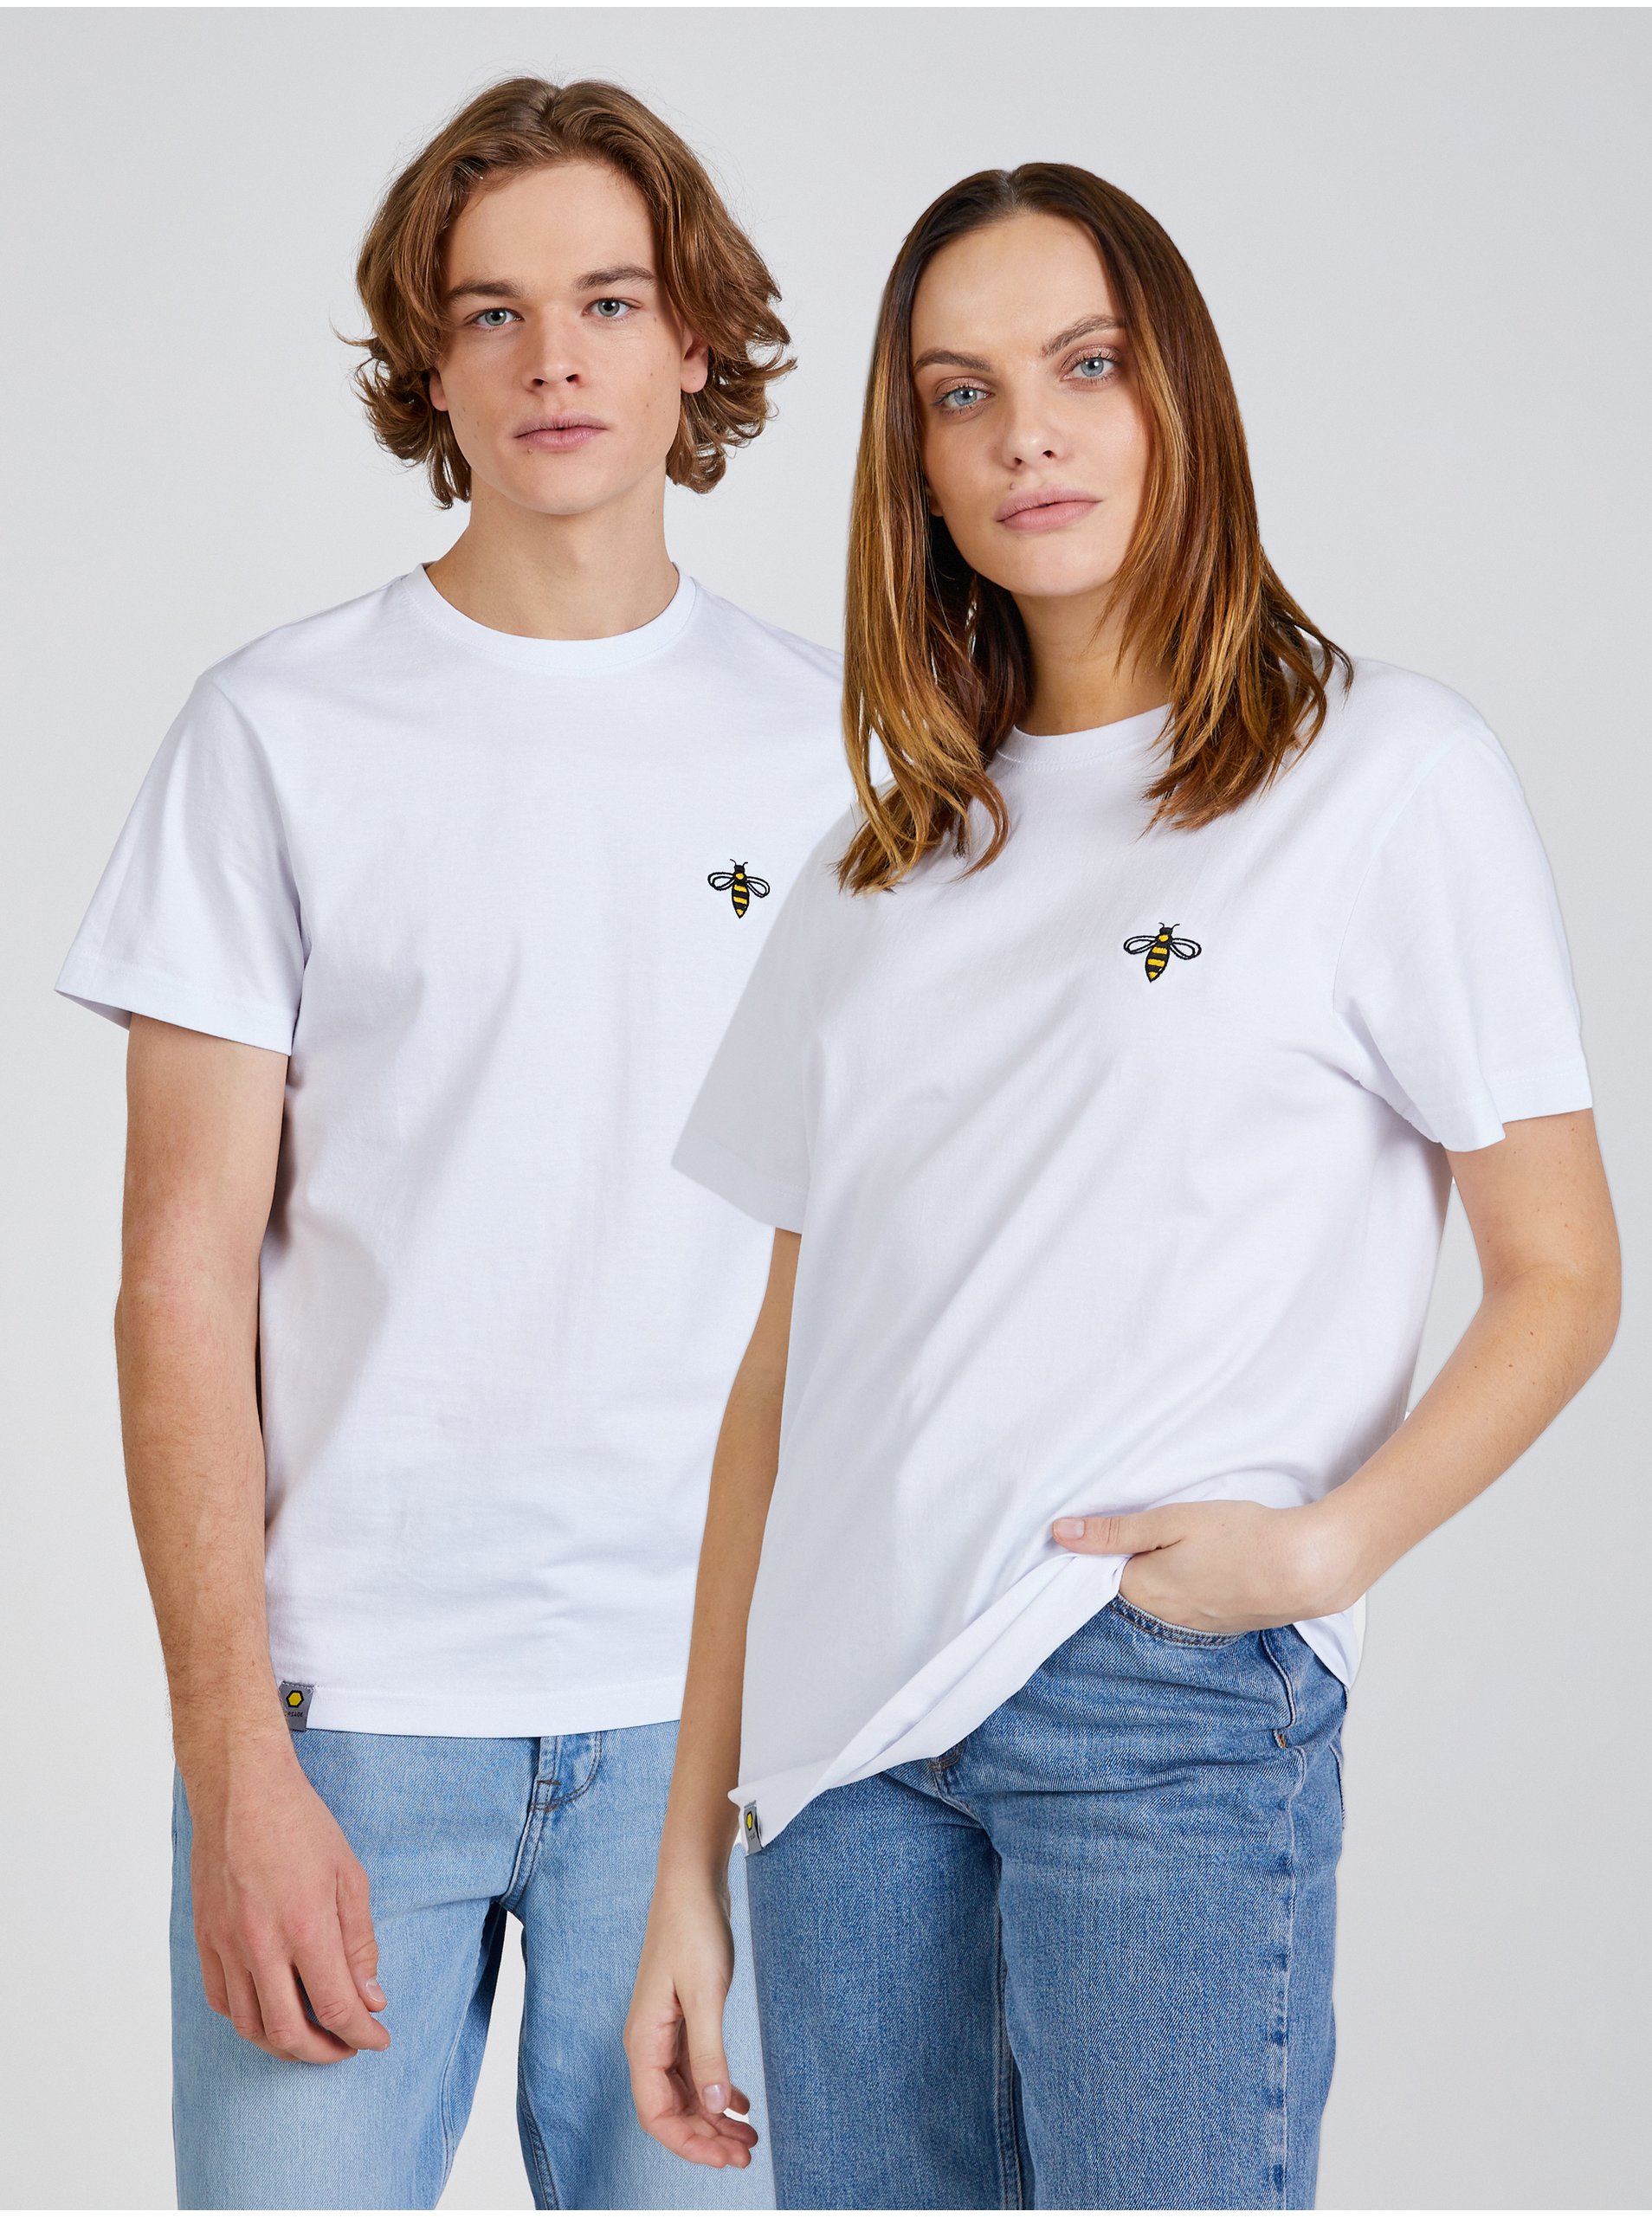 Levně Bílé unisex tričko s výšivkou včely DOBRO. pro Forsage